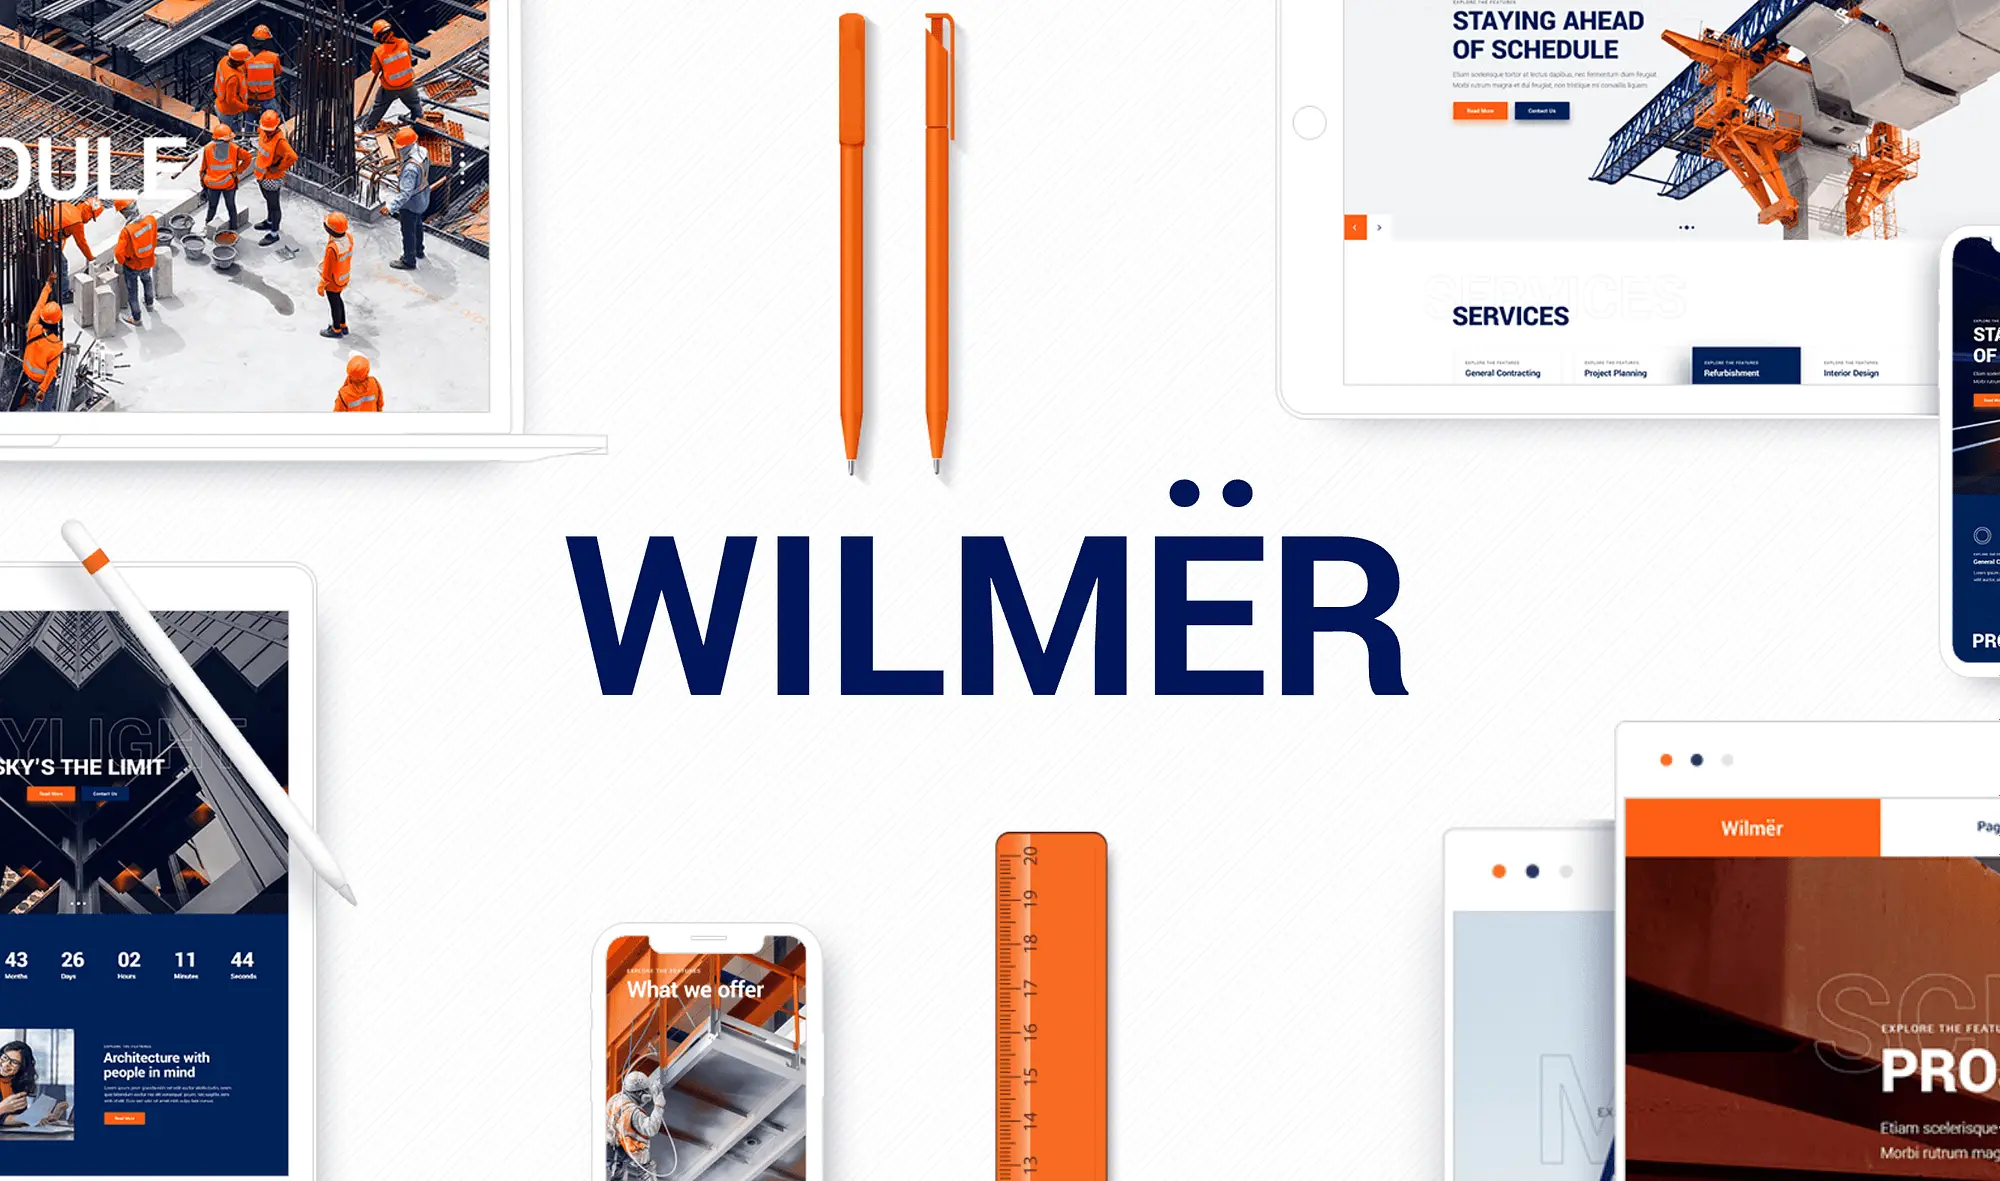 Wilmer是一個建築主題，可用作物業管理網站範本。